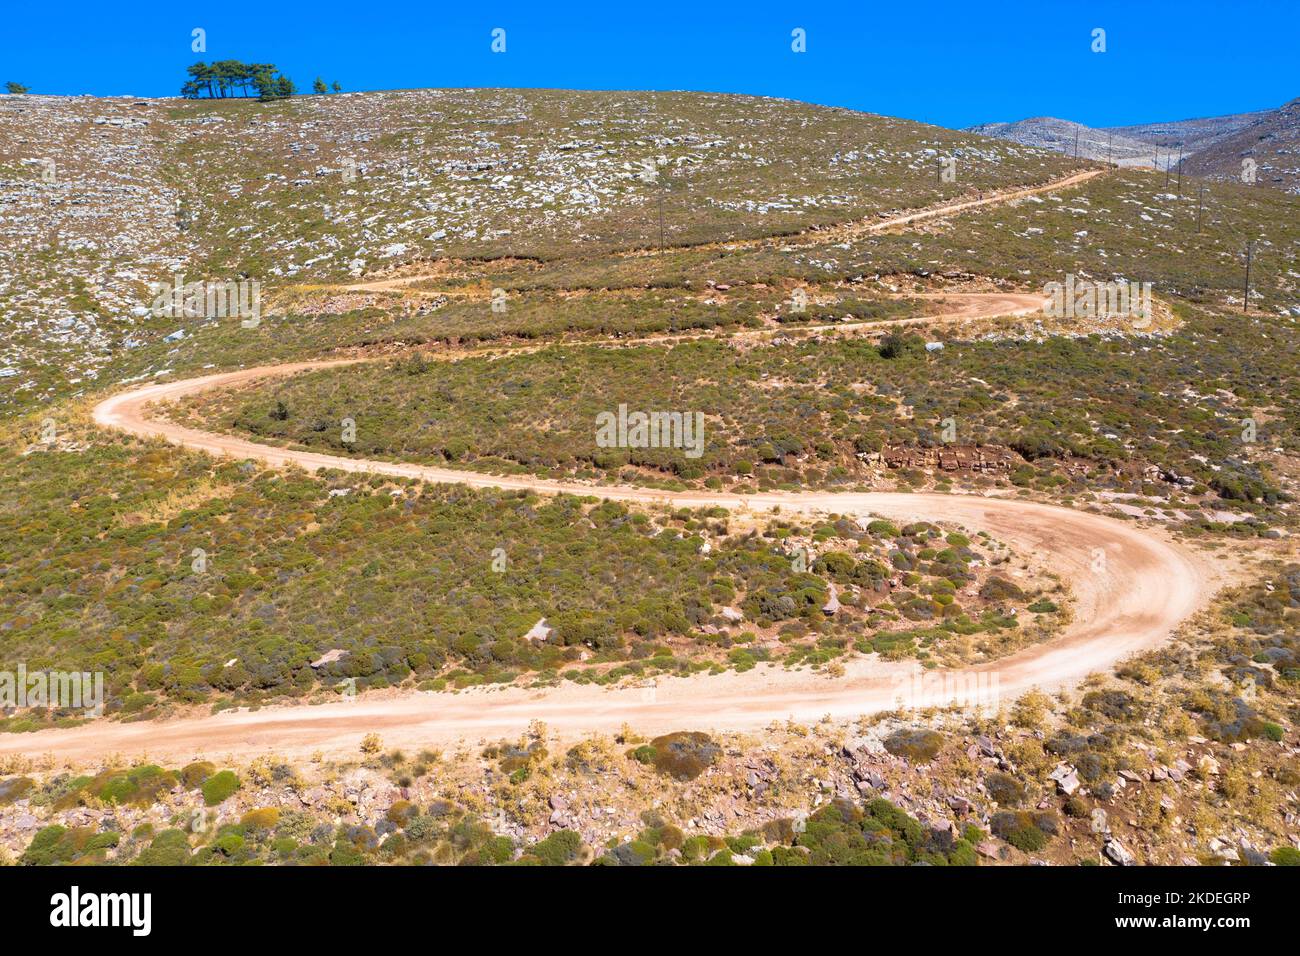 Spettacolare vista aerea con pista a serpentina fuori strada fino alla cima del monte Attavyros. La montagna più alta dell'isola di Rodi, Grecia. Foto Stock